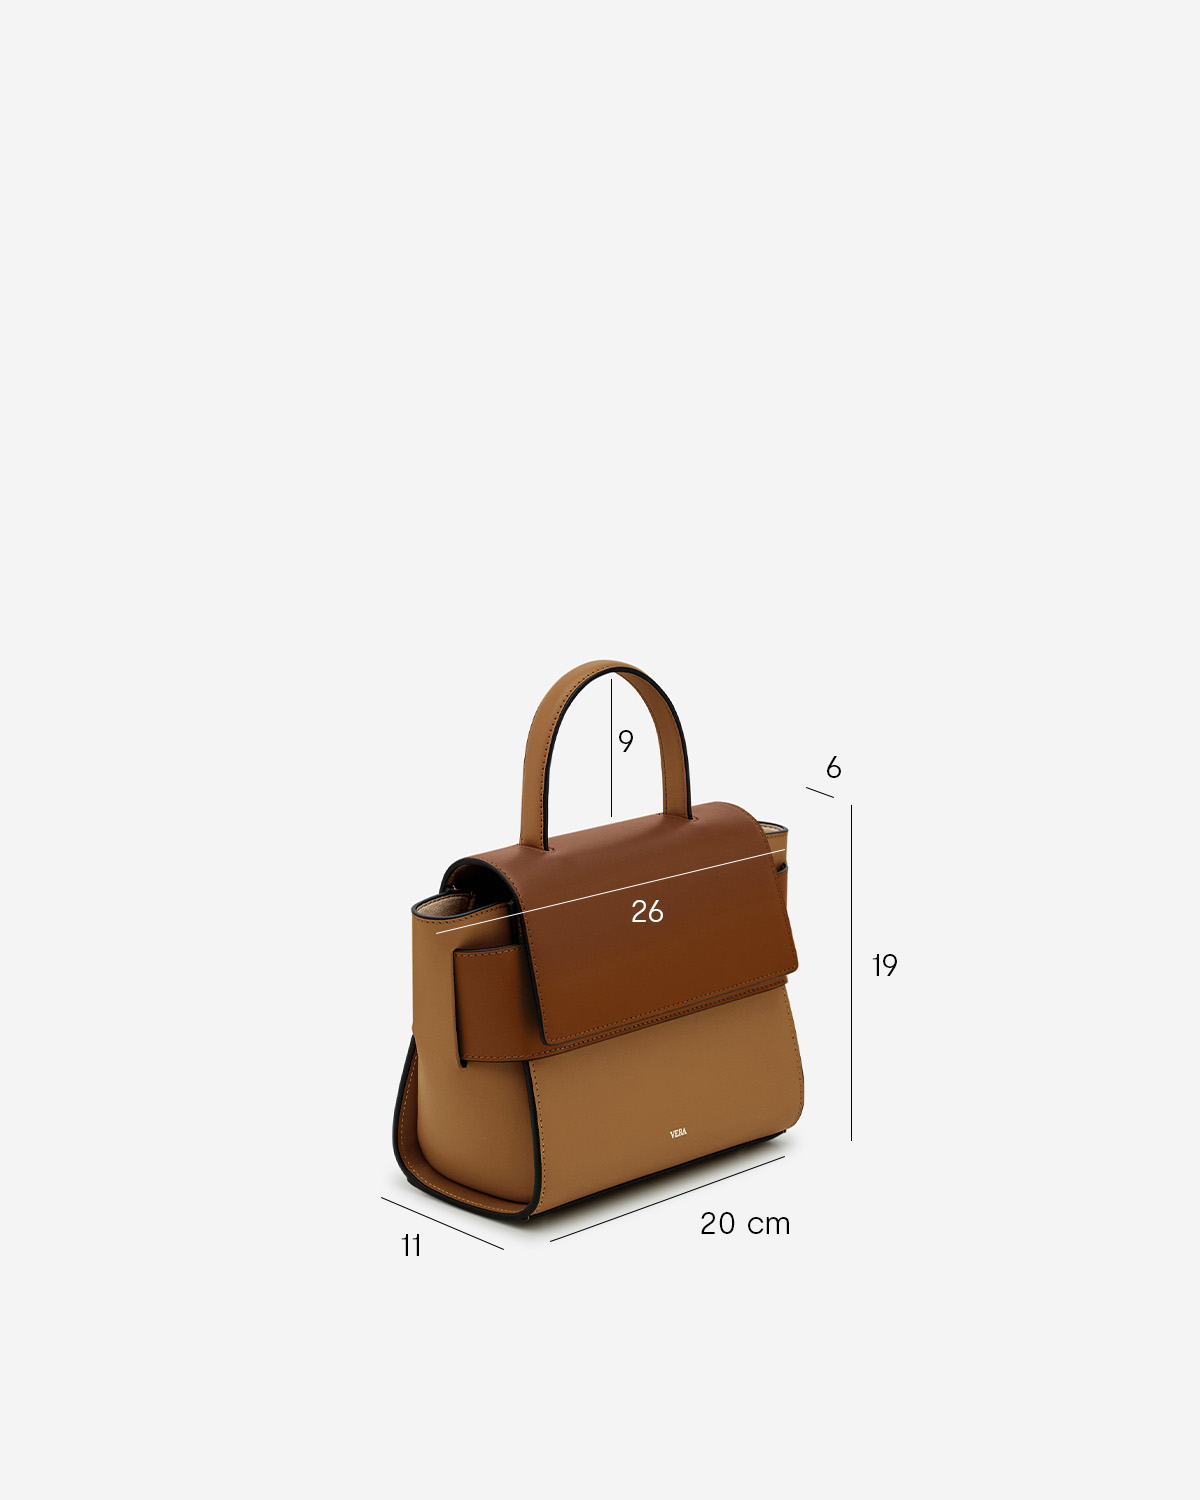 กระเป๋าถือหนังแท้ VERA Margo Leather Handbag, Size 20 สี Caramel